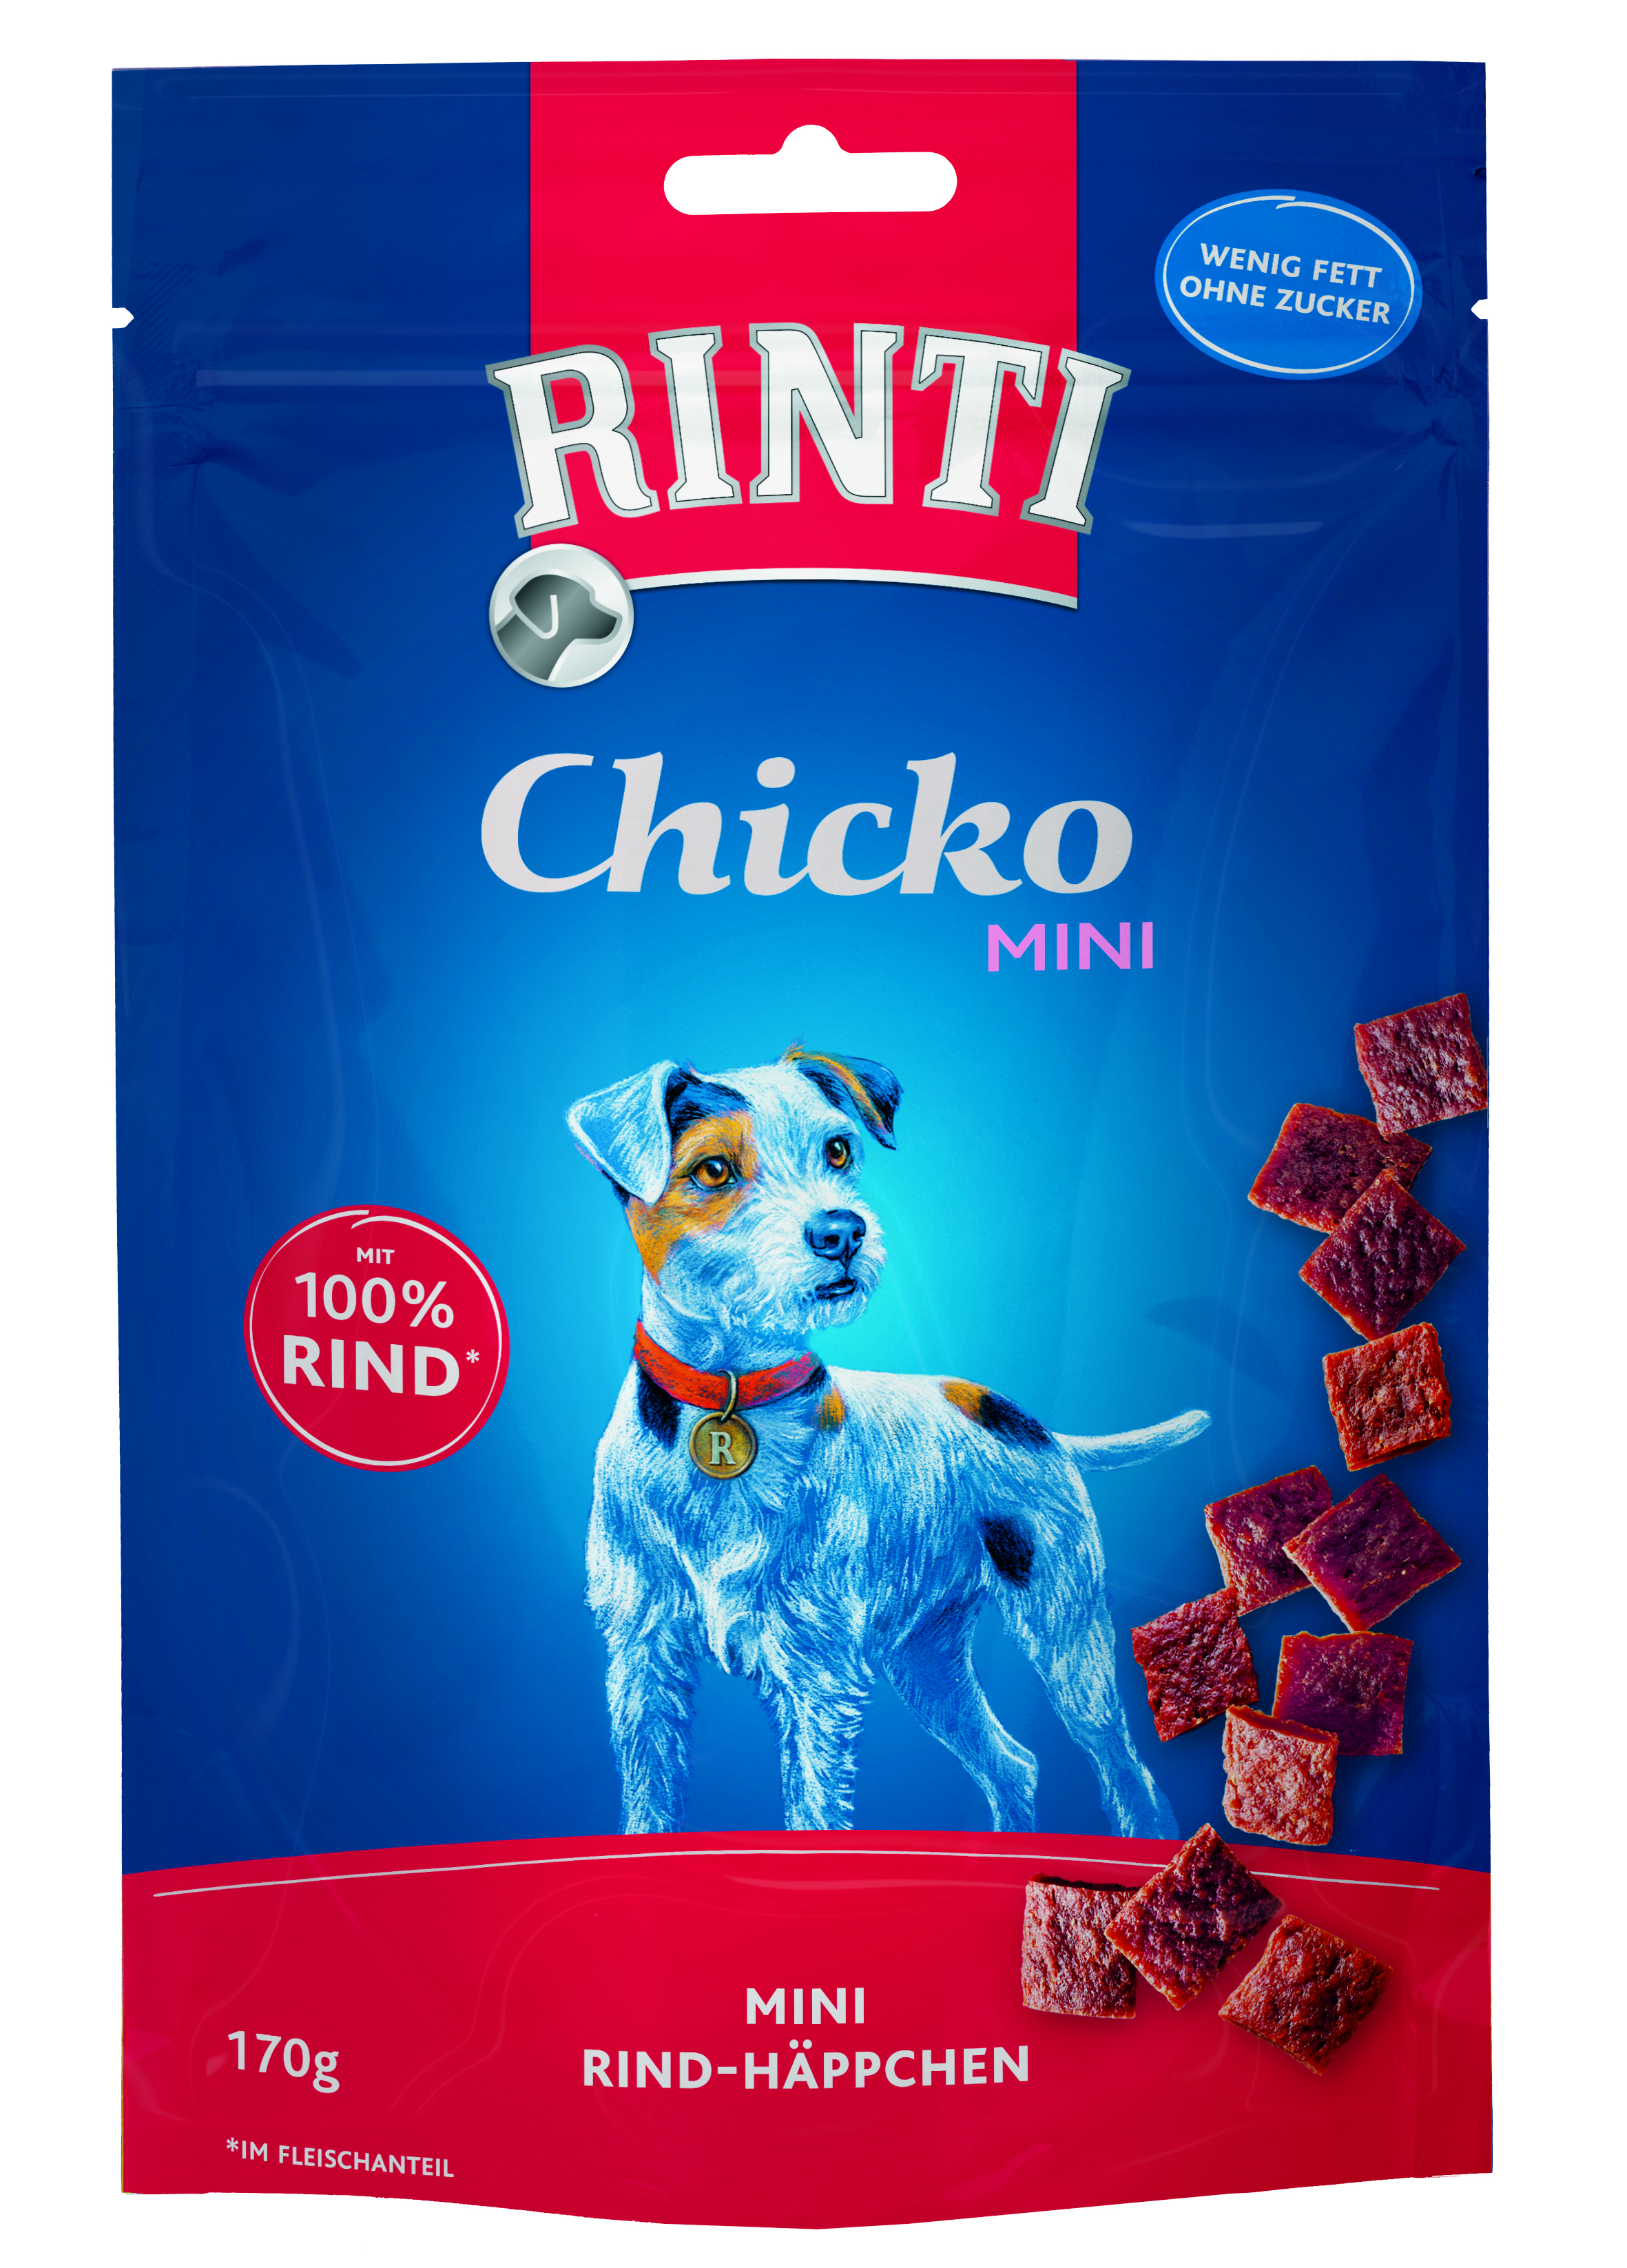 Rinti Chicko Mini - Kleine Stückchen aus Rind  im Vorratspack